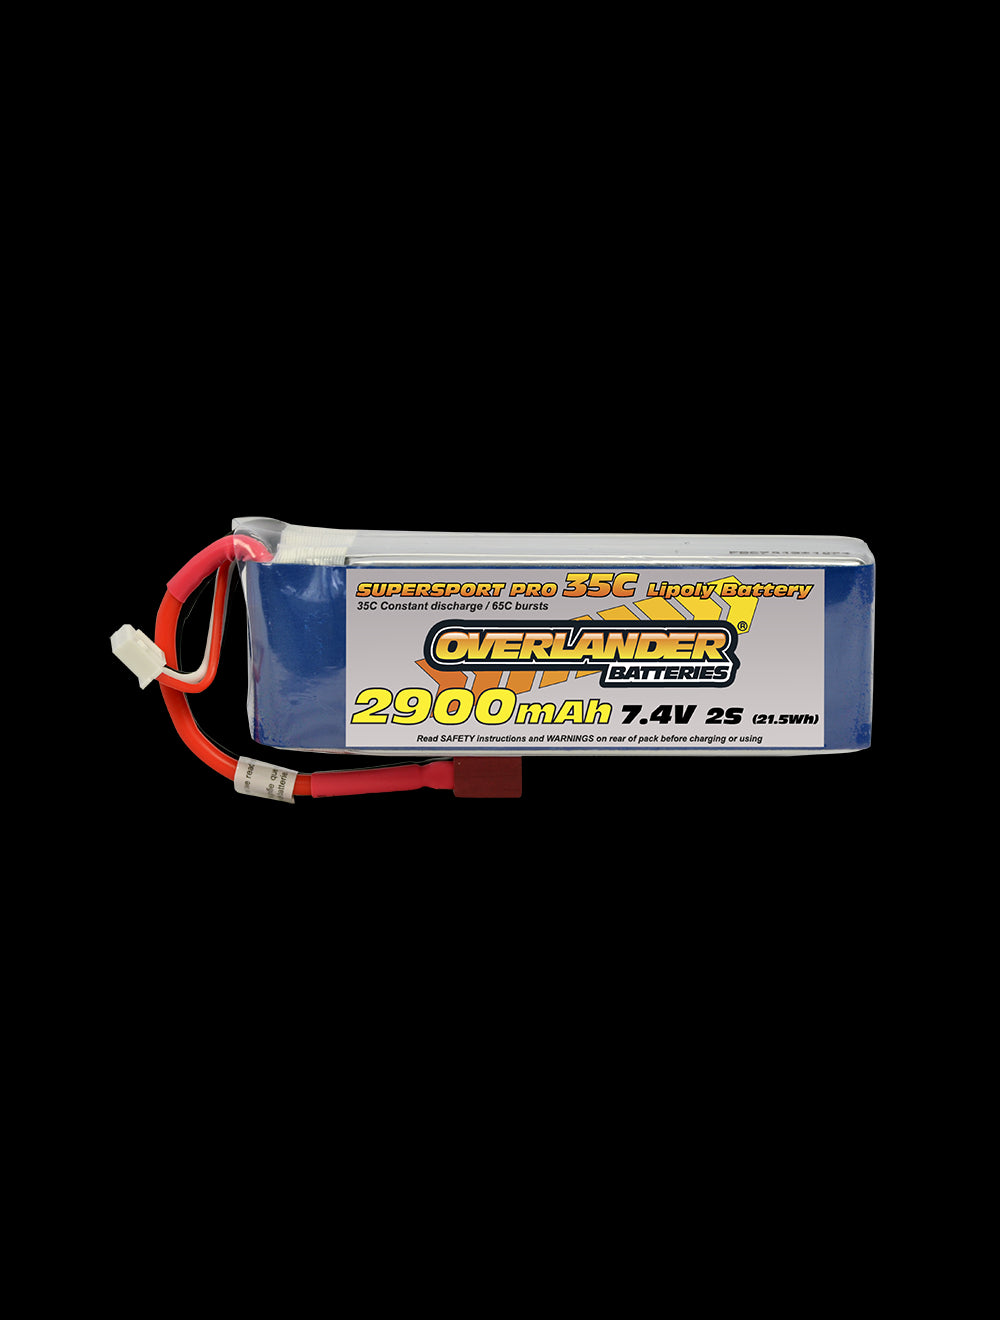 Overlander 2900mAh 7.4V 2S 35C Supersport Pro LiPo Battery - Deans Connector 3396